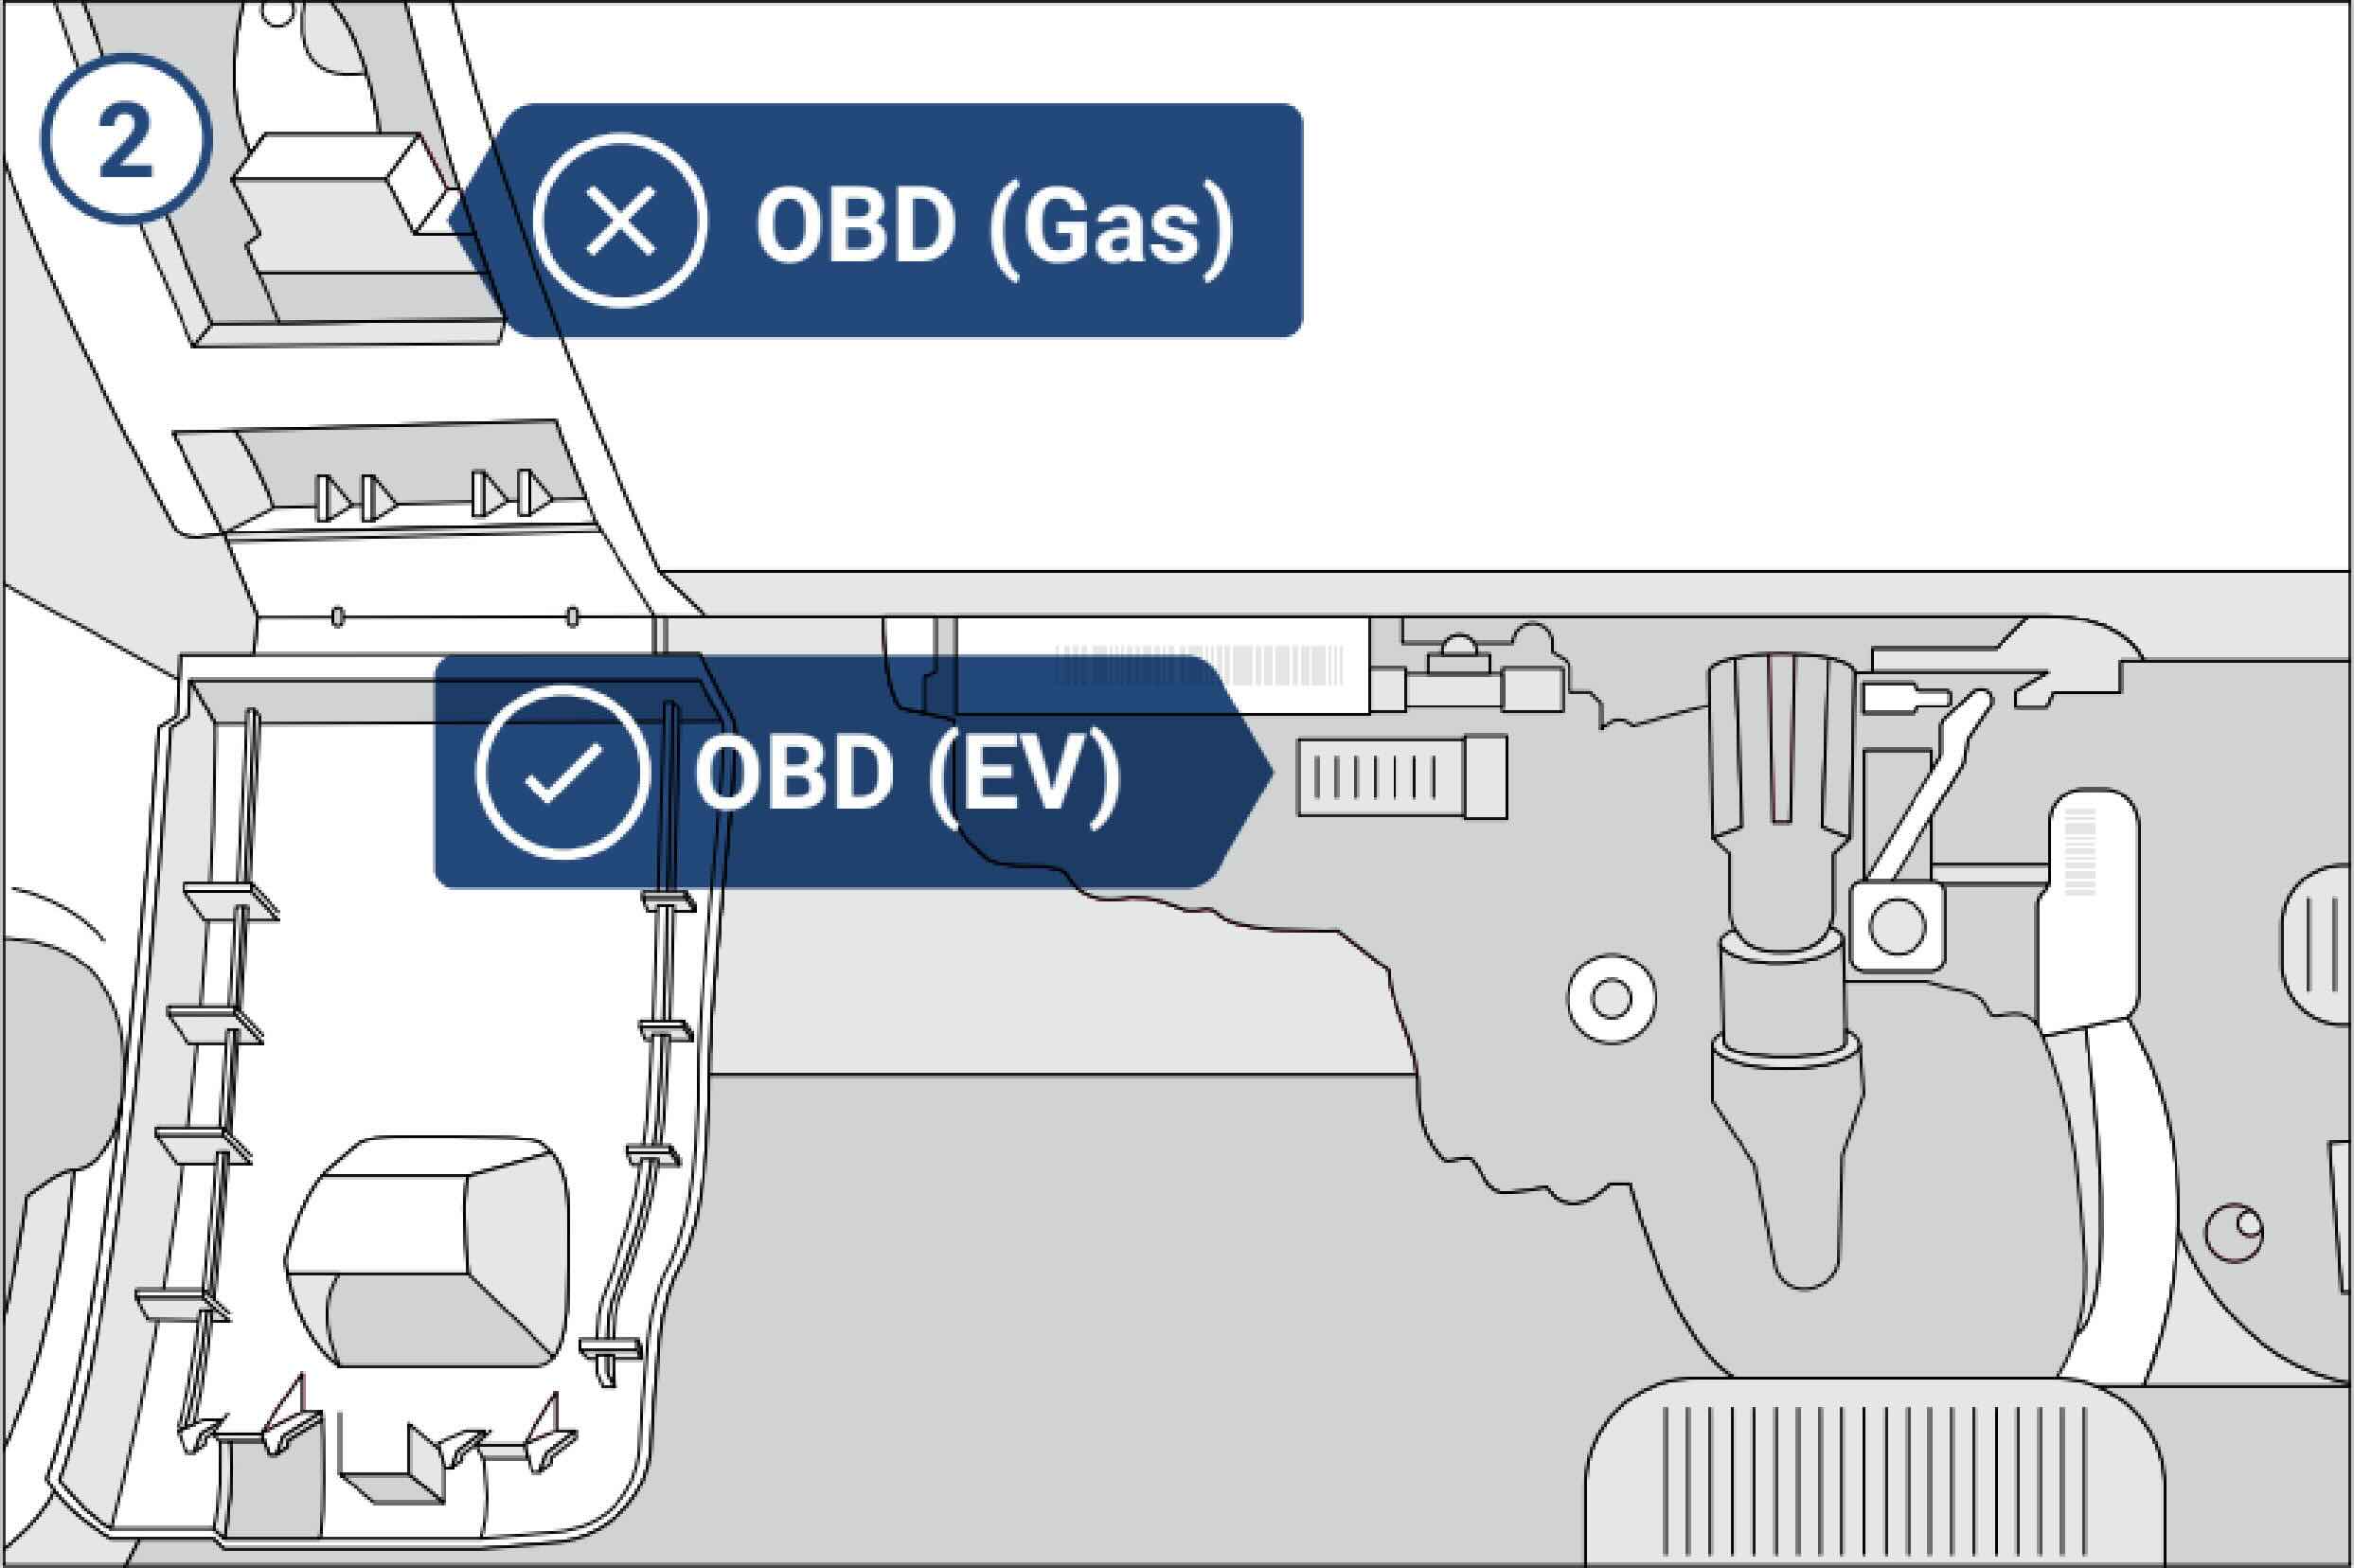 OBD Gas and EV